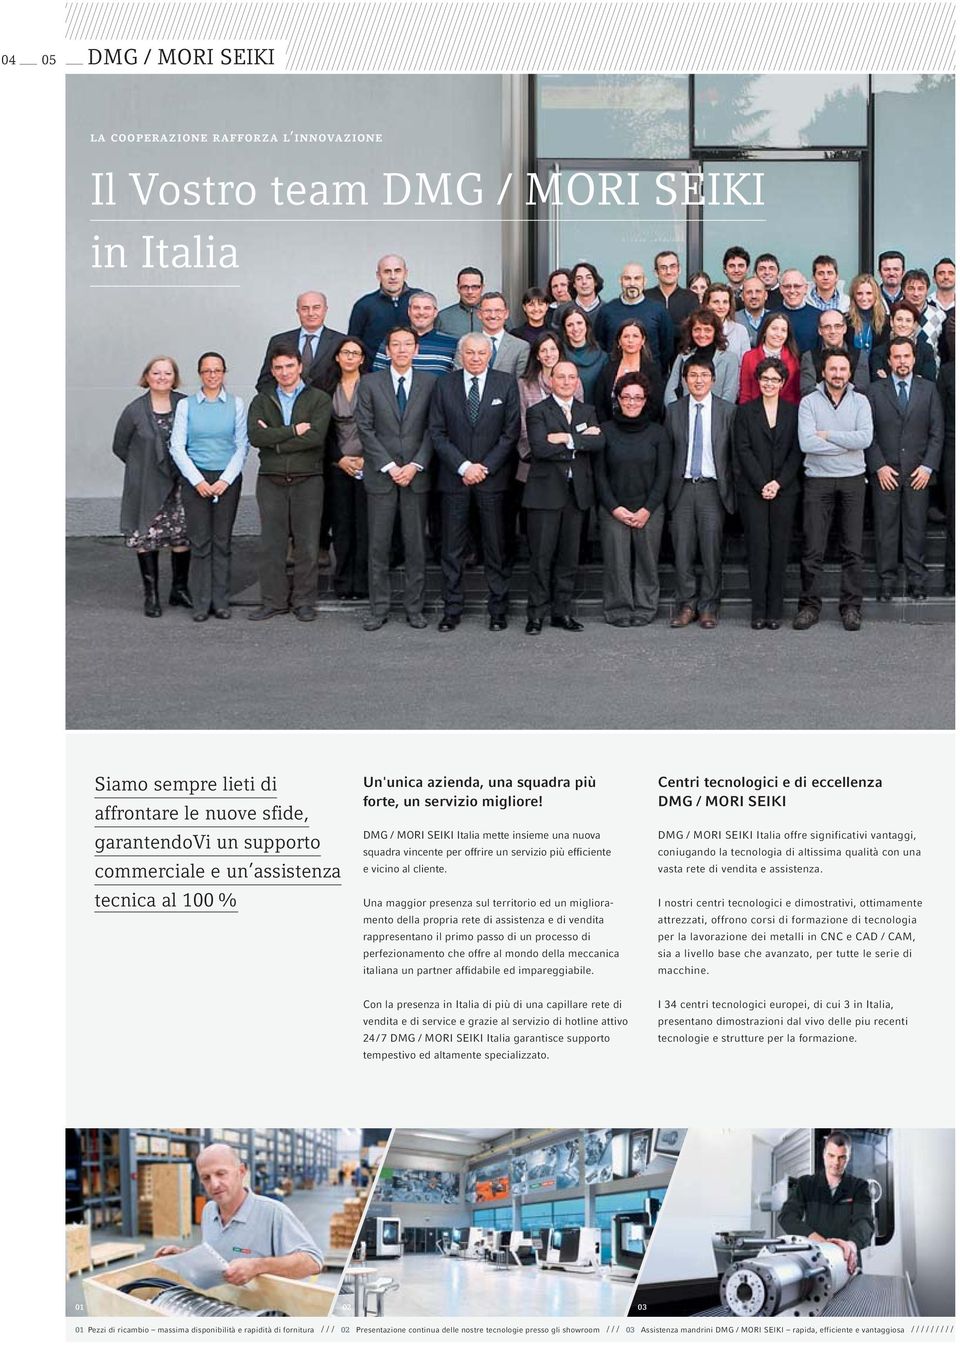 DMG / MORI SEIKI Italia mette insieme una nuova squadra vincente per offrire un servizio più efficiente e vicino al cliente.